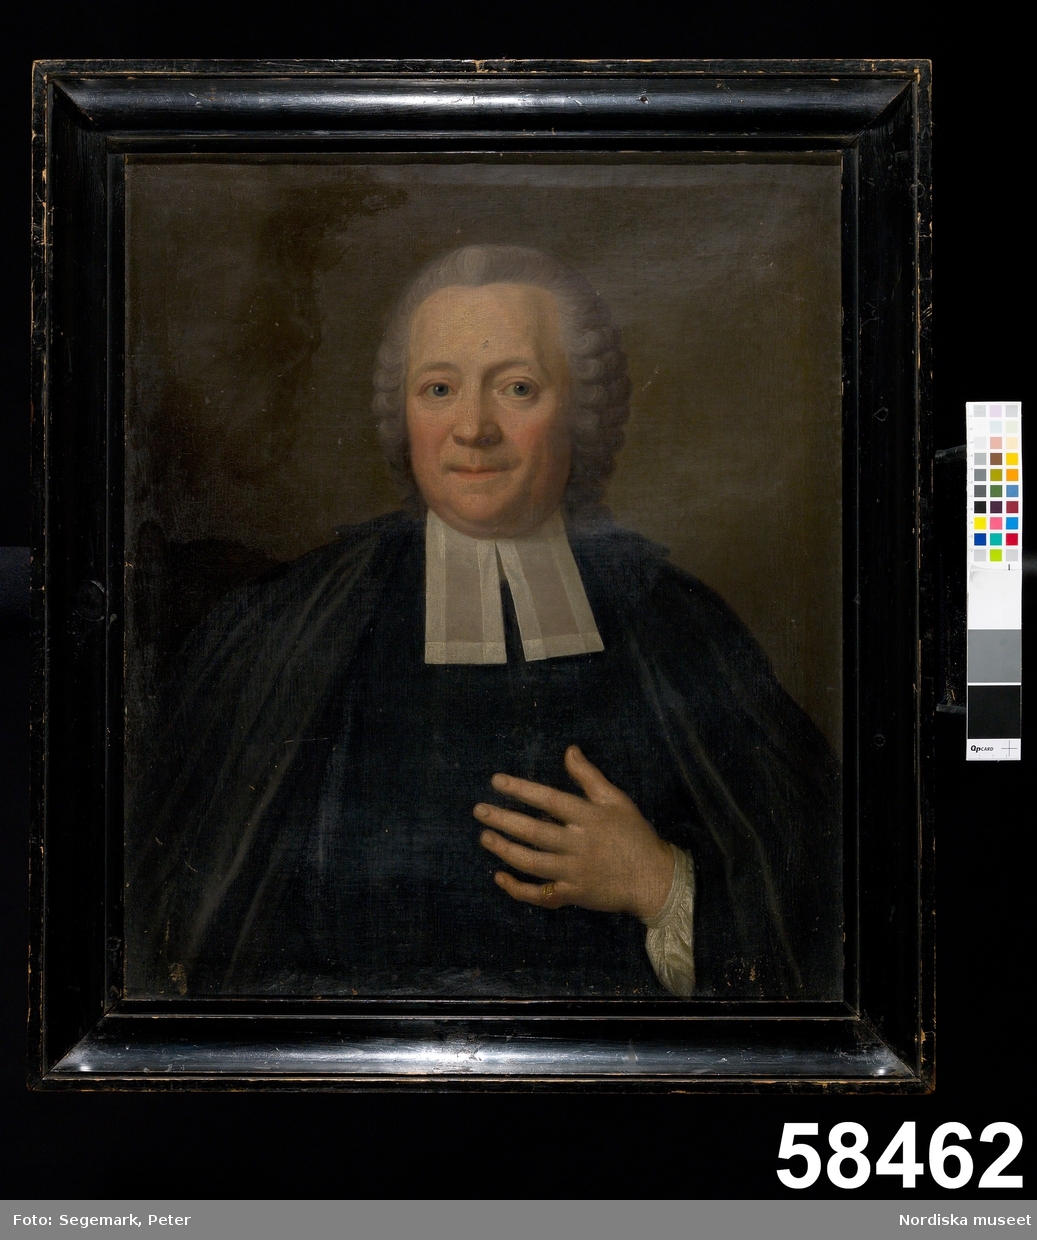 Mansporträtt: prästporträtt, midjebild, en face.